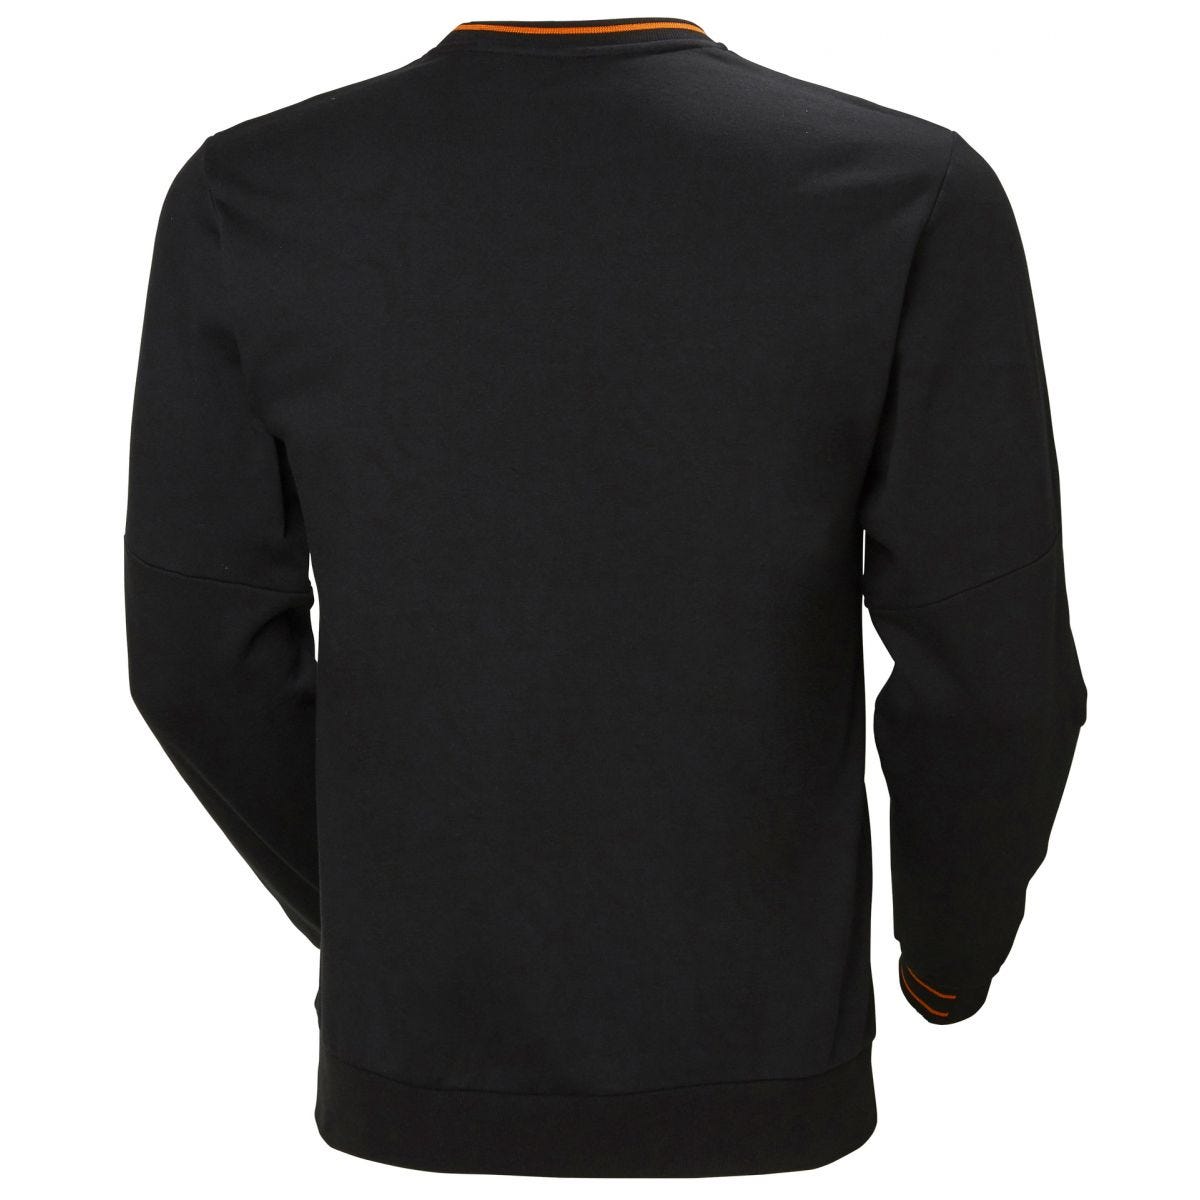 Sweatshirt Kensington Noir - Helly Hansen - Taille S 1